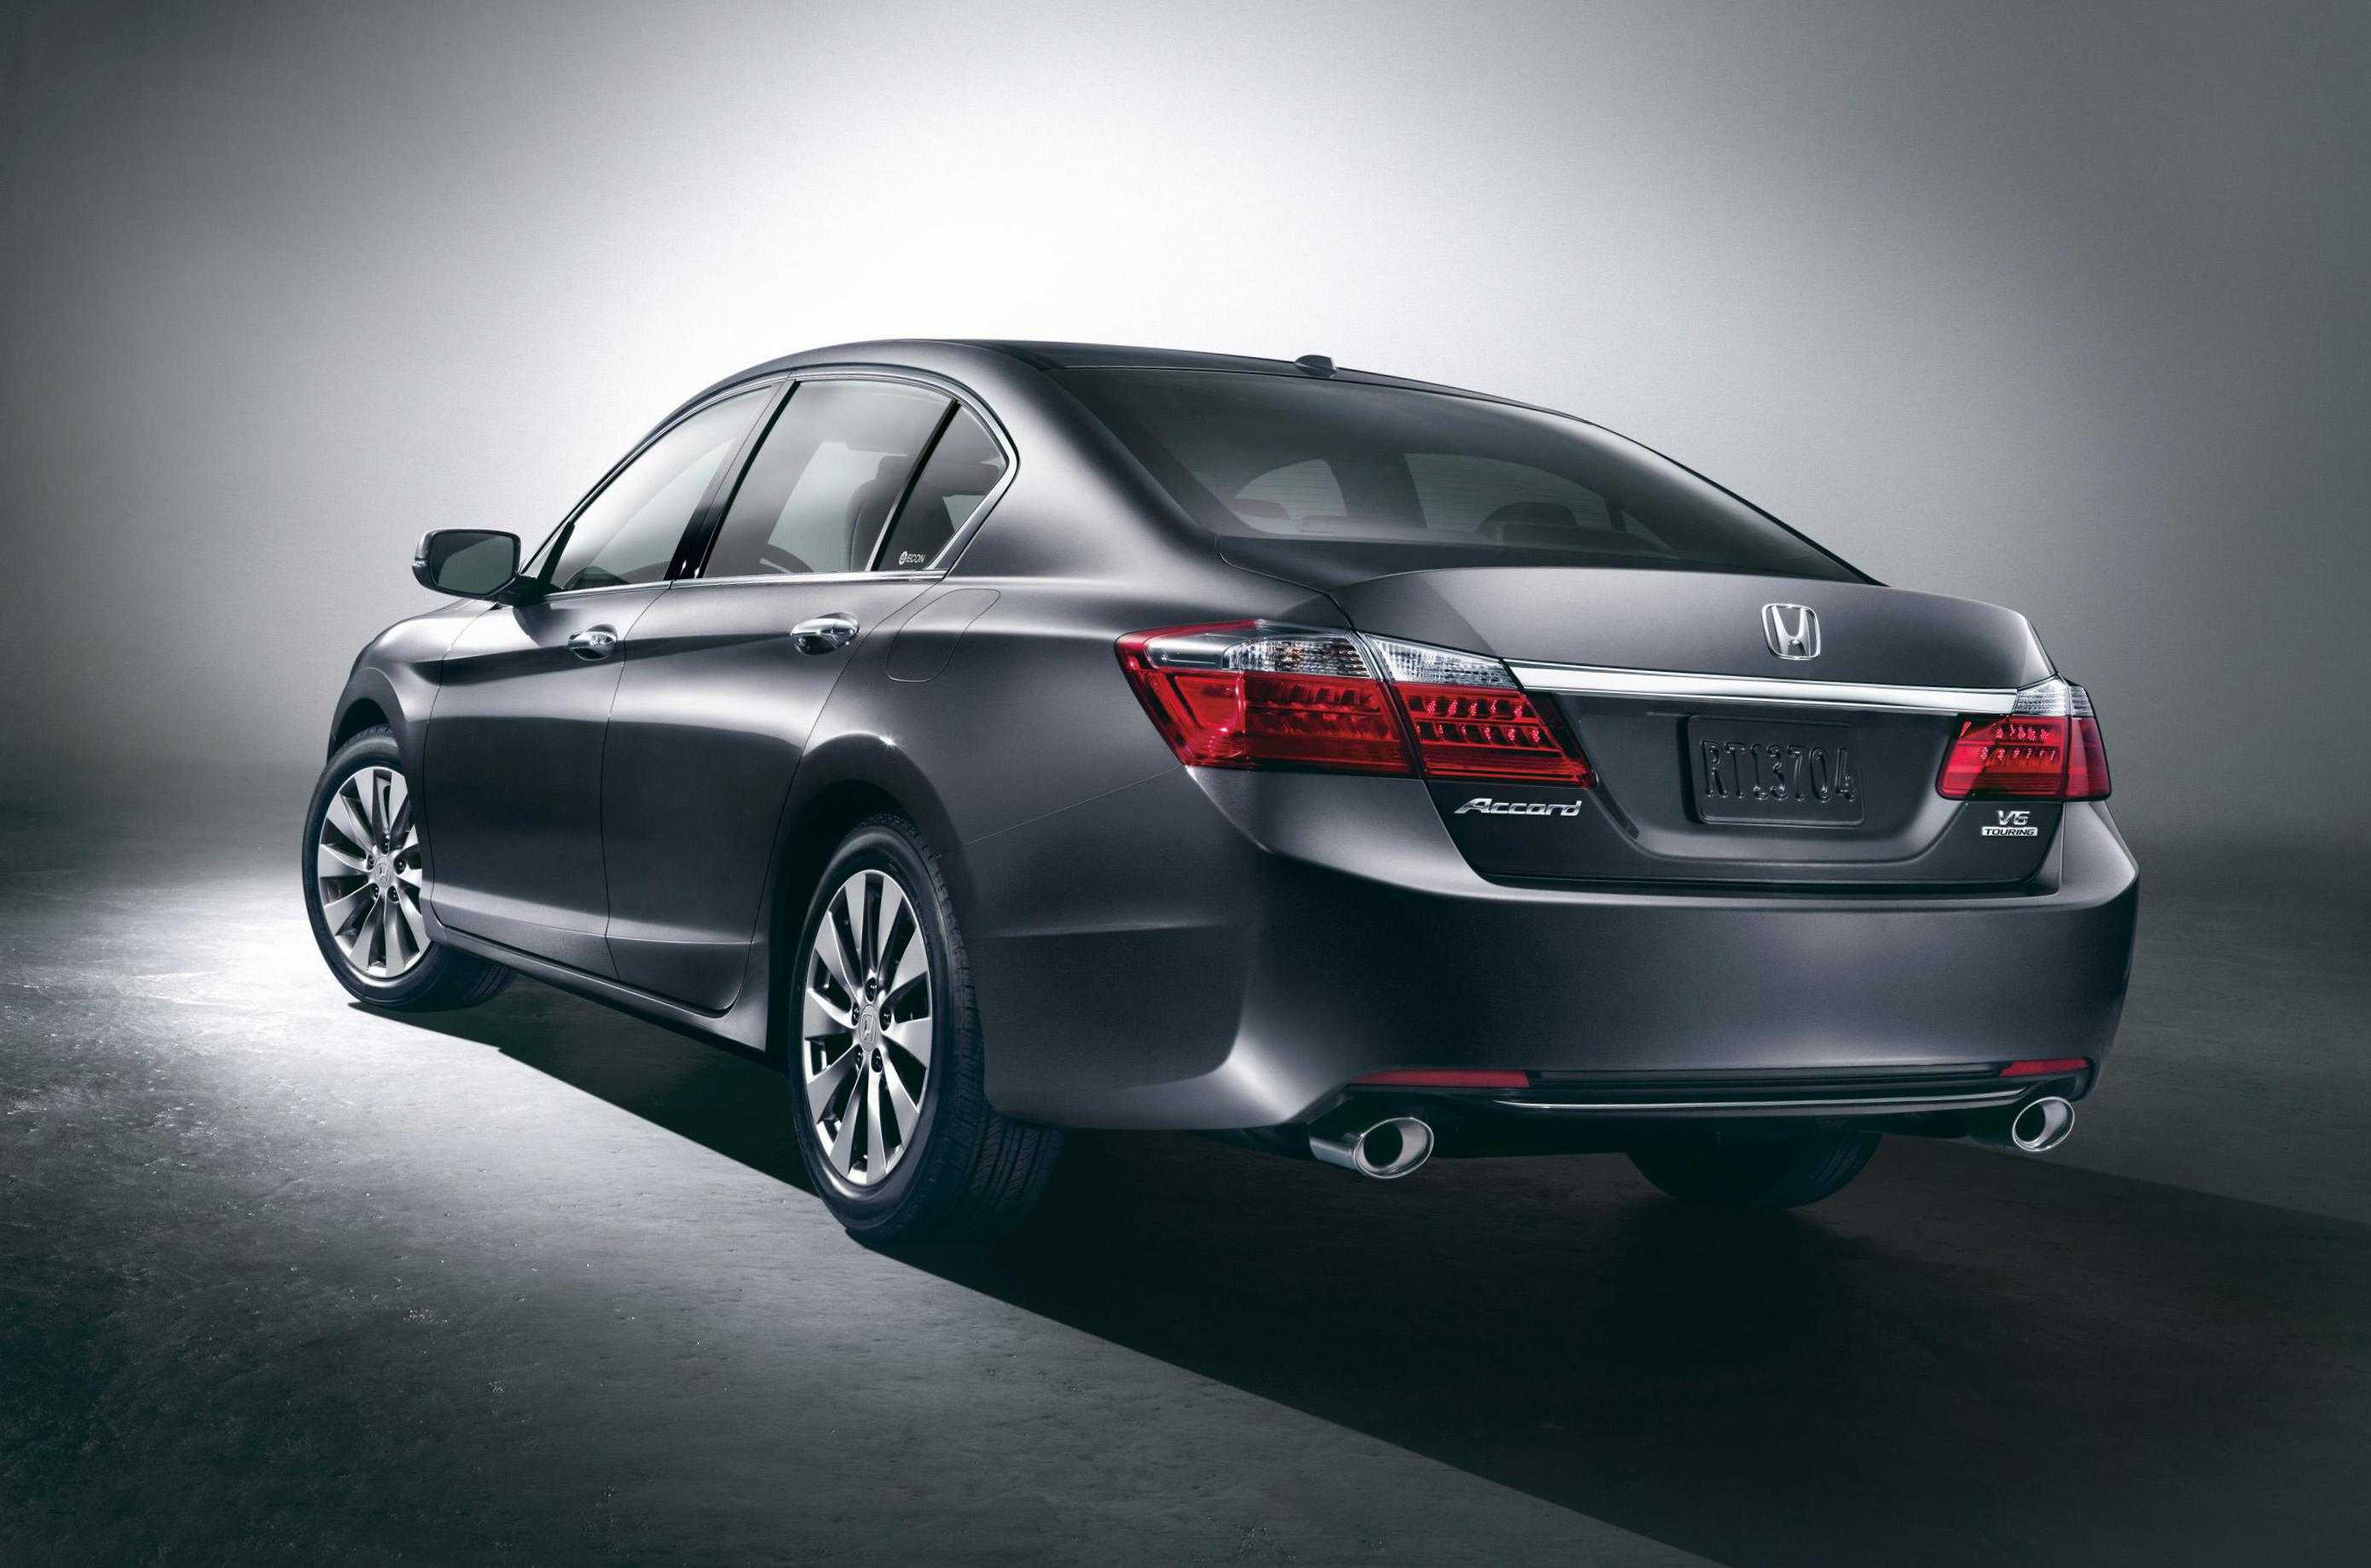 Honda accord: поколения, кузова по годам, история модели и года выпуска, рестайлинг, характеристики, габариты, фото - carsweek